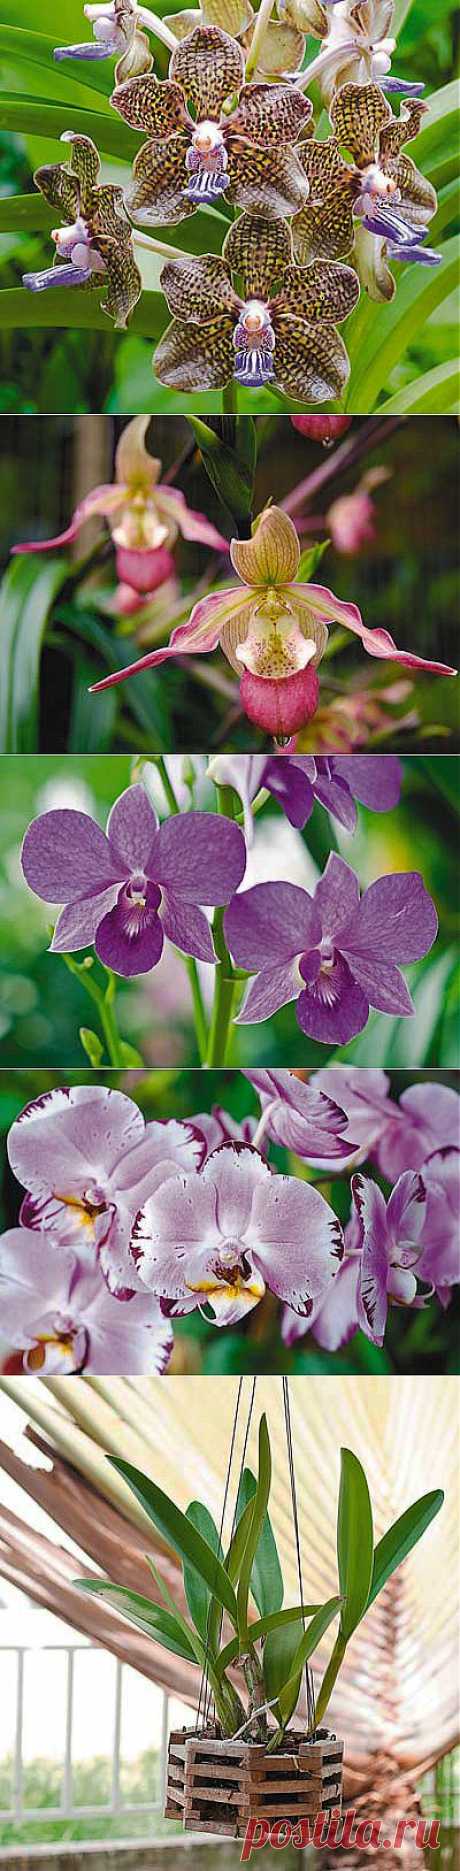 Орхидеи для начинающих: 8 простых советов | Наша дача